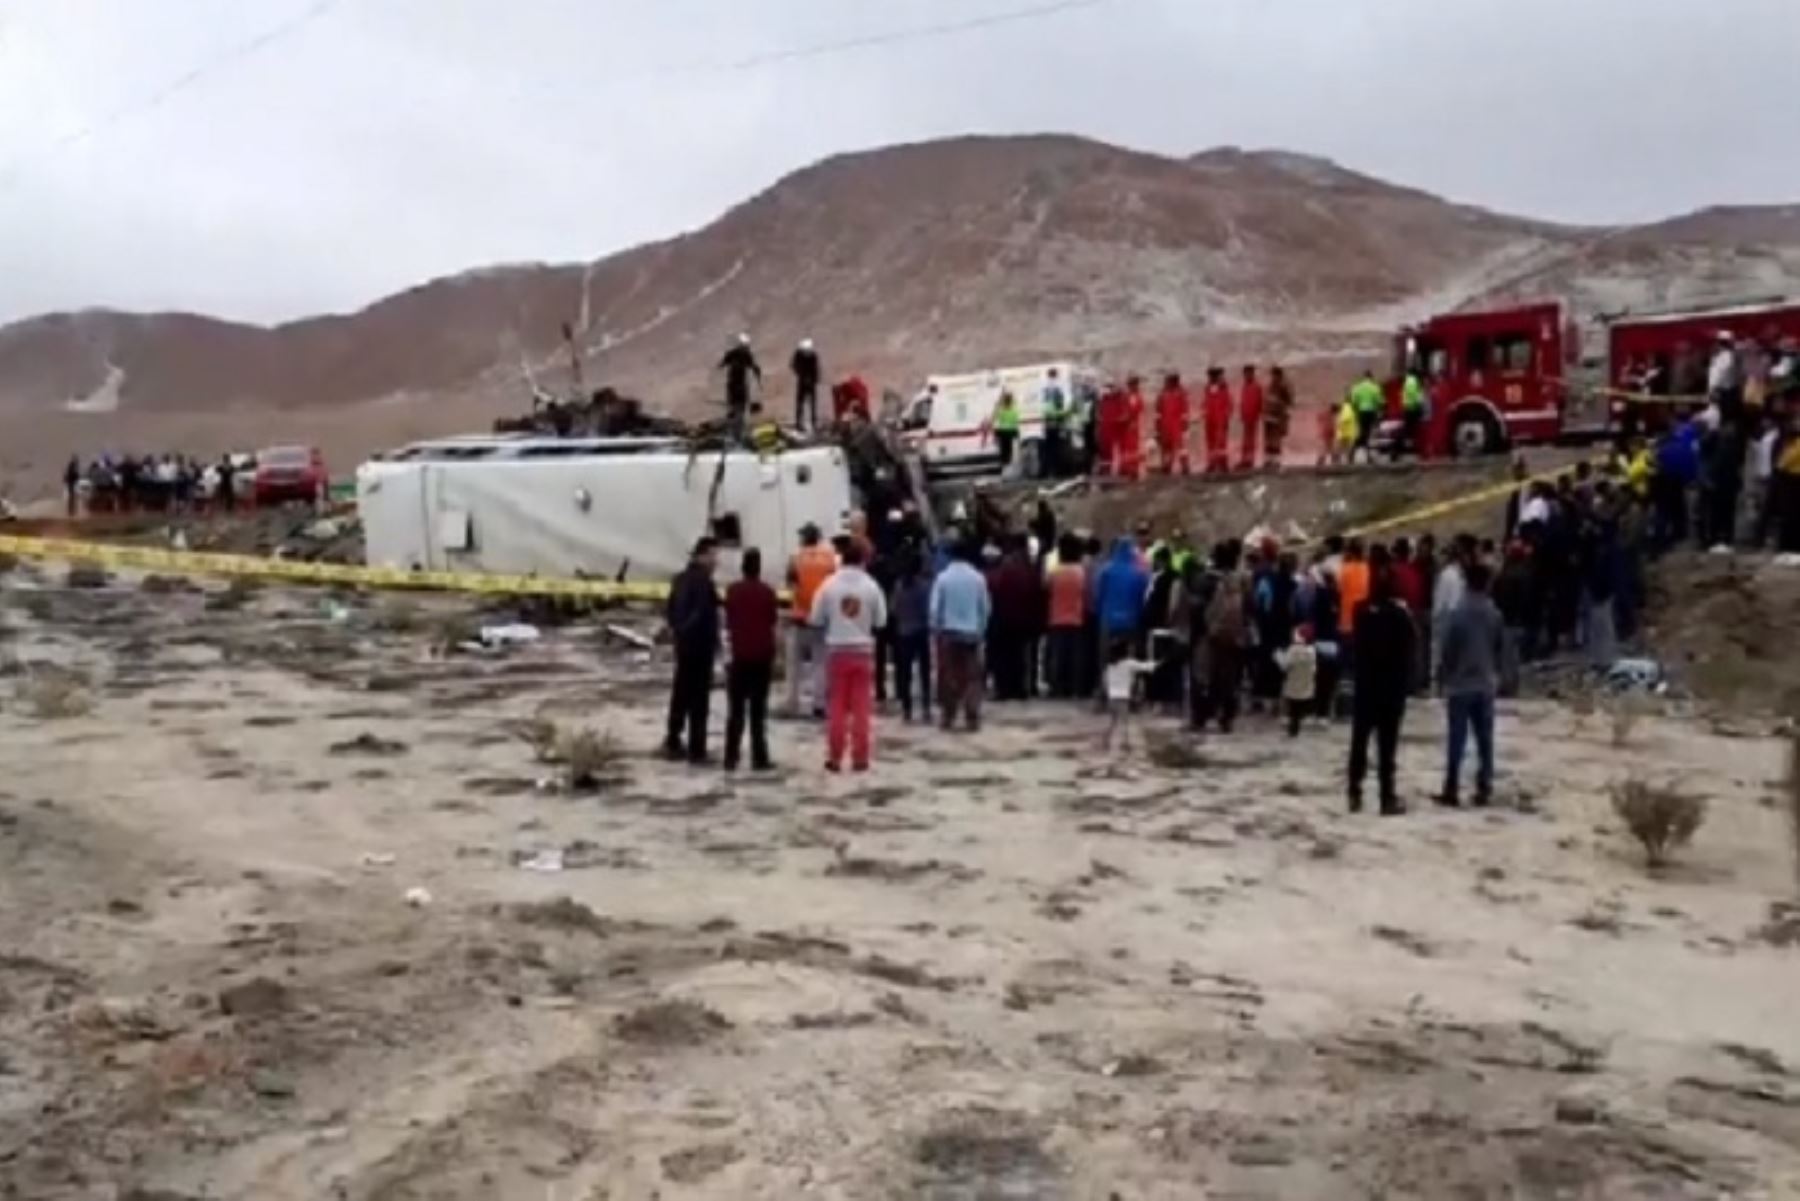 El accidente se registró al promediar las 14:00 horas en el sector del cruce de Cerro Verde a menos de una hora de la ciudad de Arequipa, entre los buses de la empresa Del Carpio,de placa V7B-957, y Santillana, de placa V6J-966. Internet/Medios.